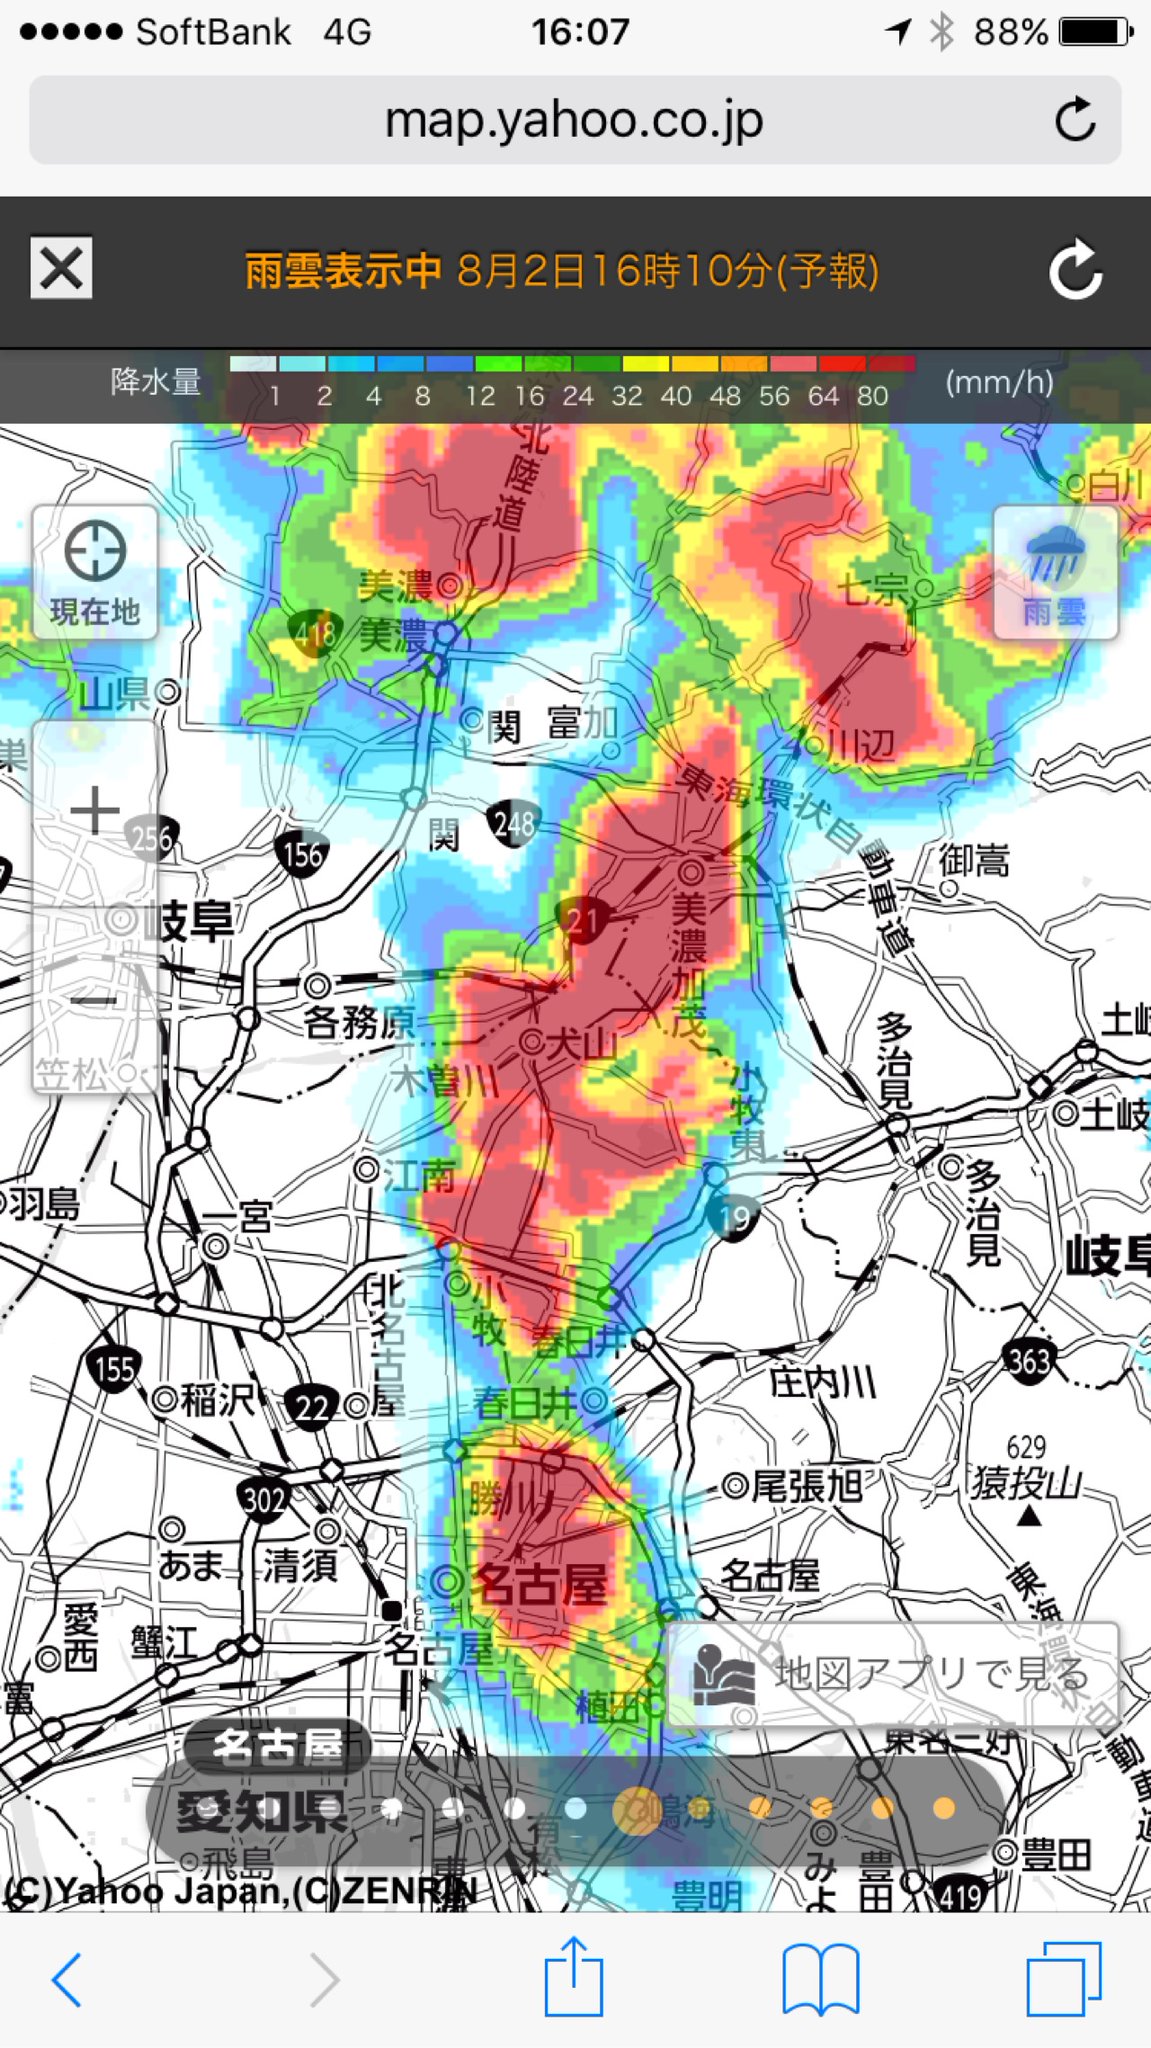 名古屋から北のほうに豪雨。 https://t.co/1p1so6iClq